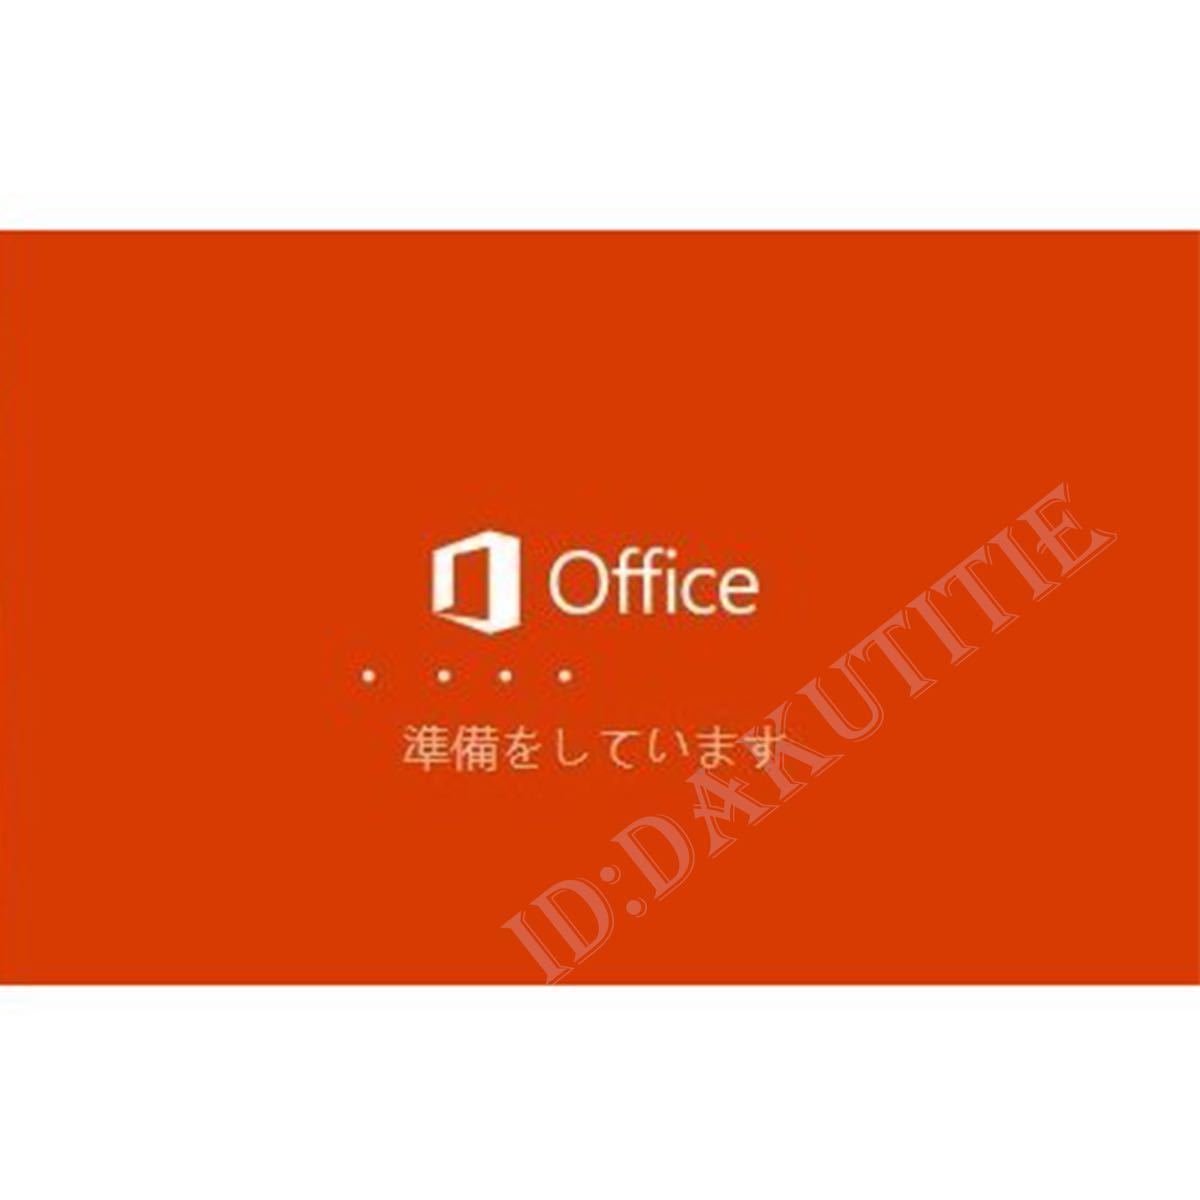 【認証保証 】Microsoft Office 2021 Professional Plus オフィス2021 プロダクトキー 正規 Word Excel 日本語版 手順書ありm_画像2